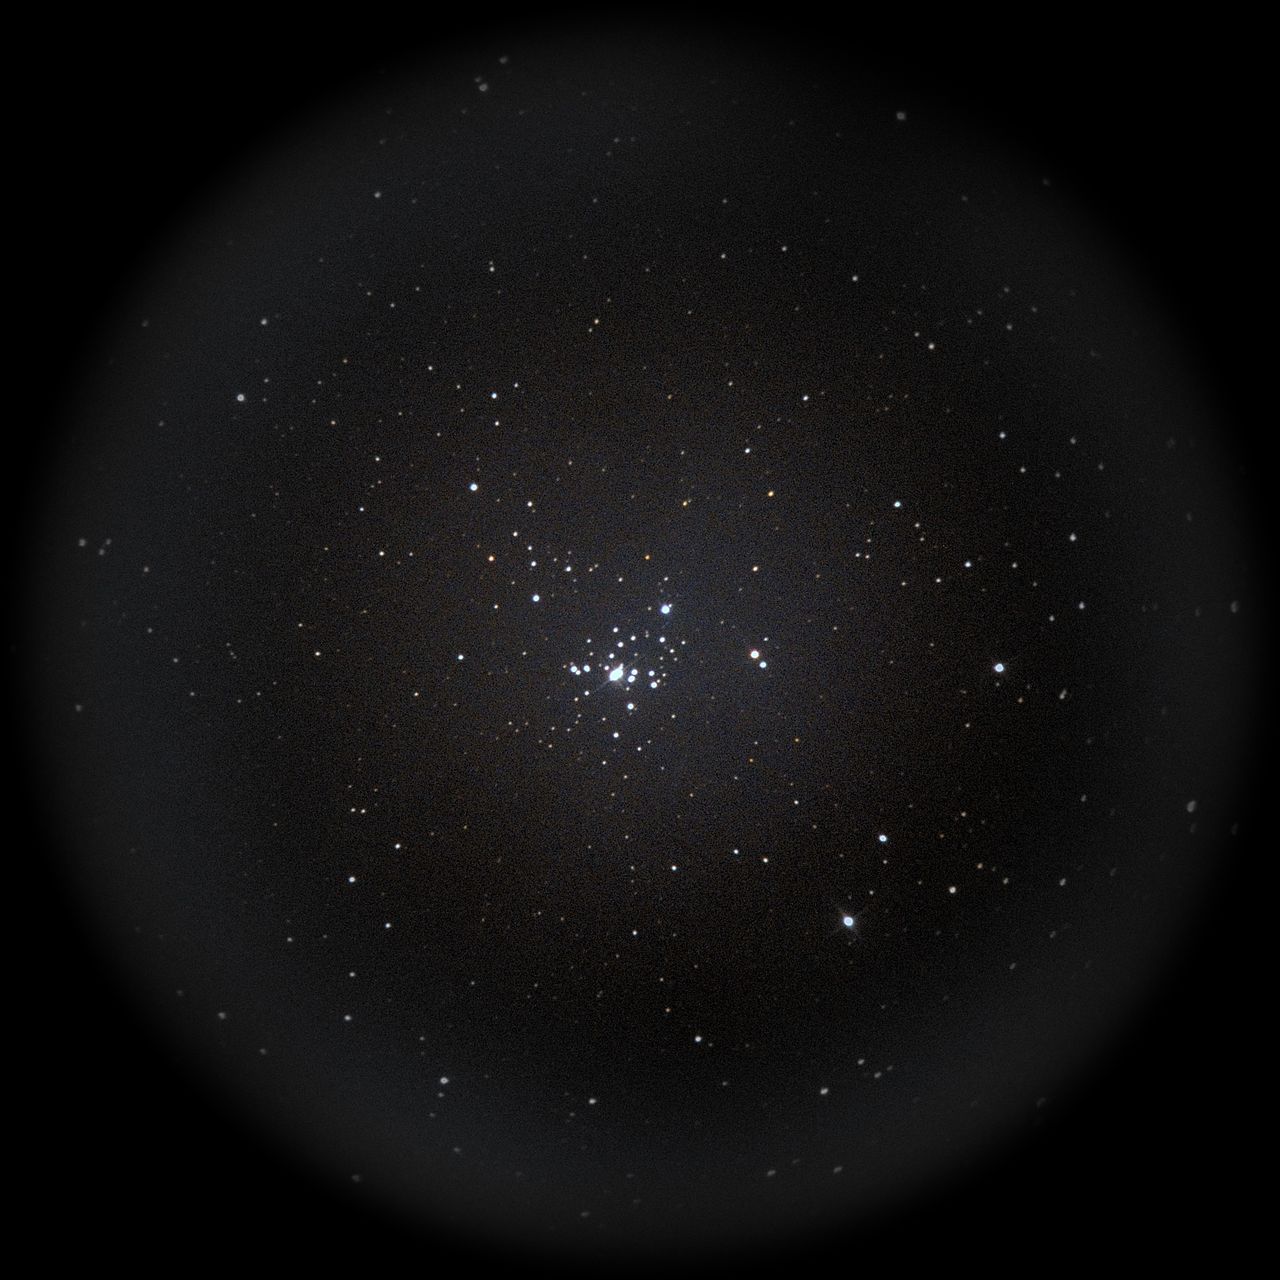 Image of NGC1502